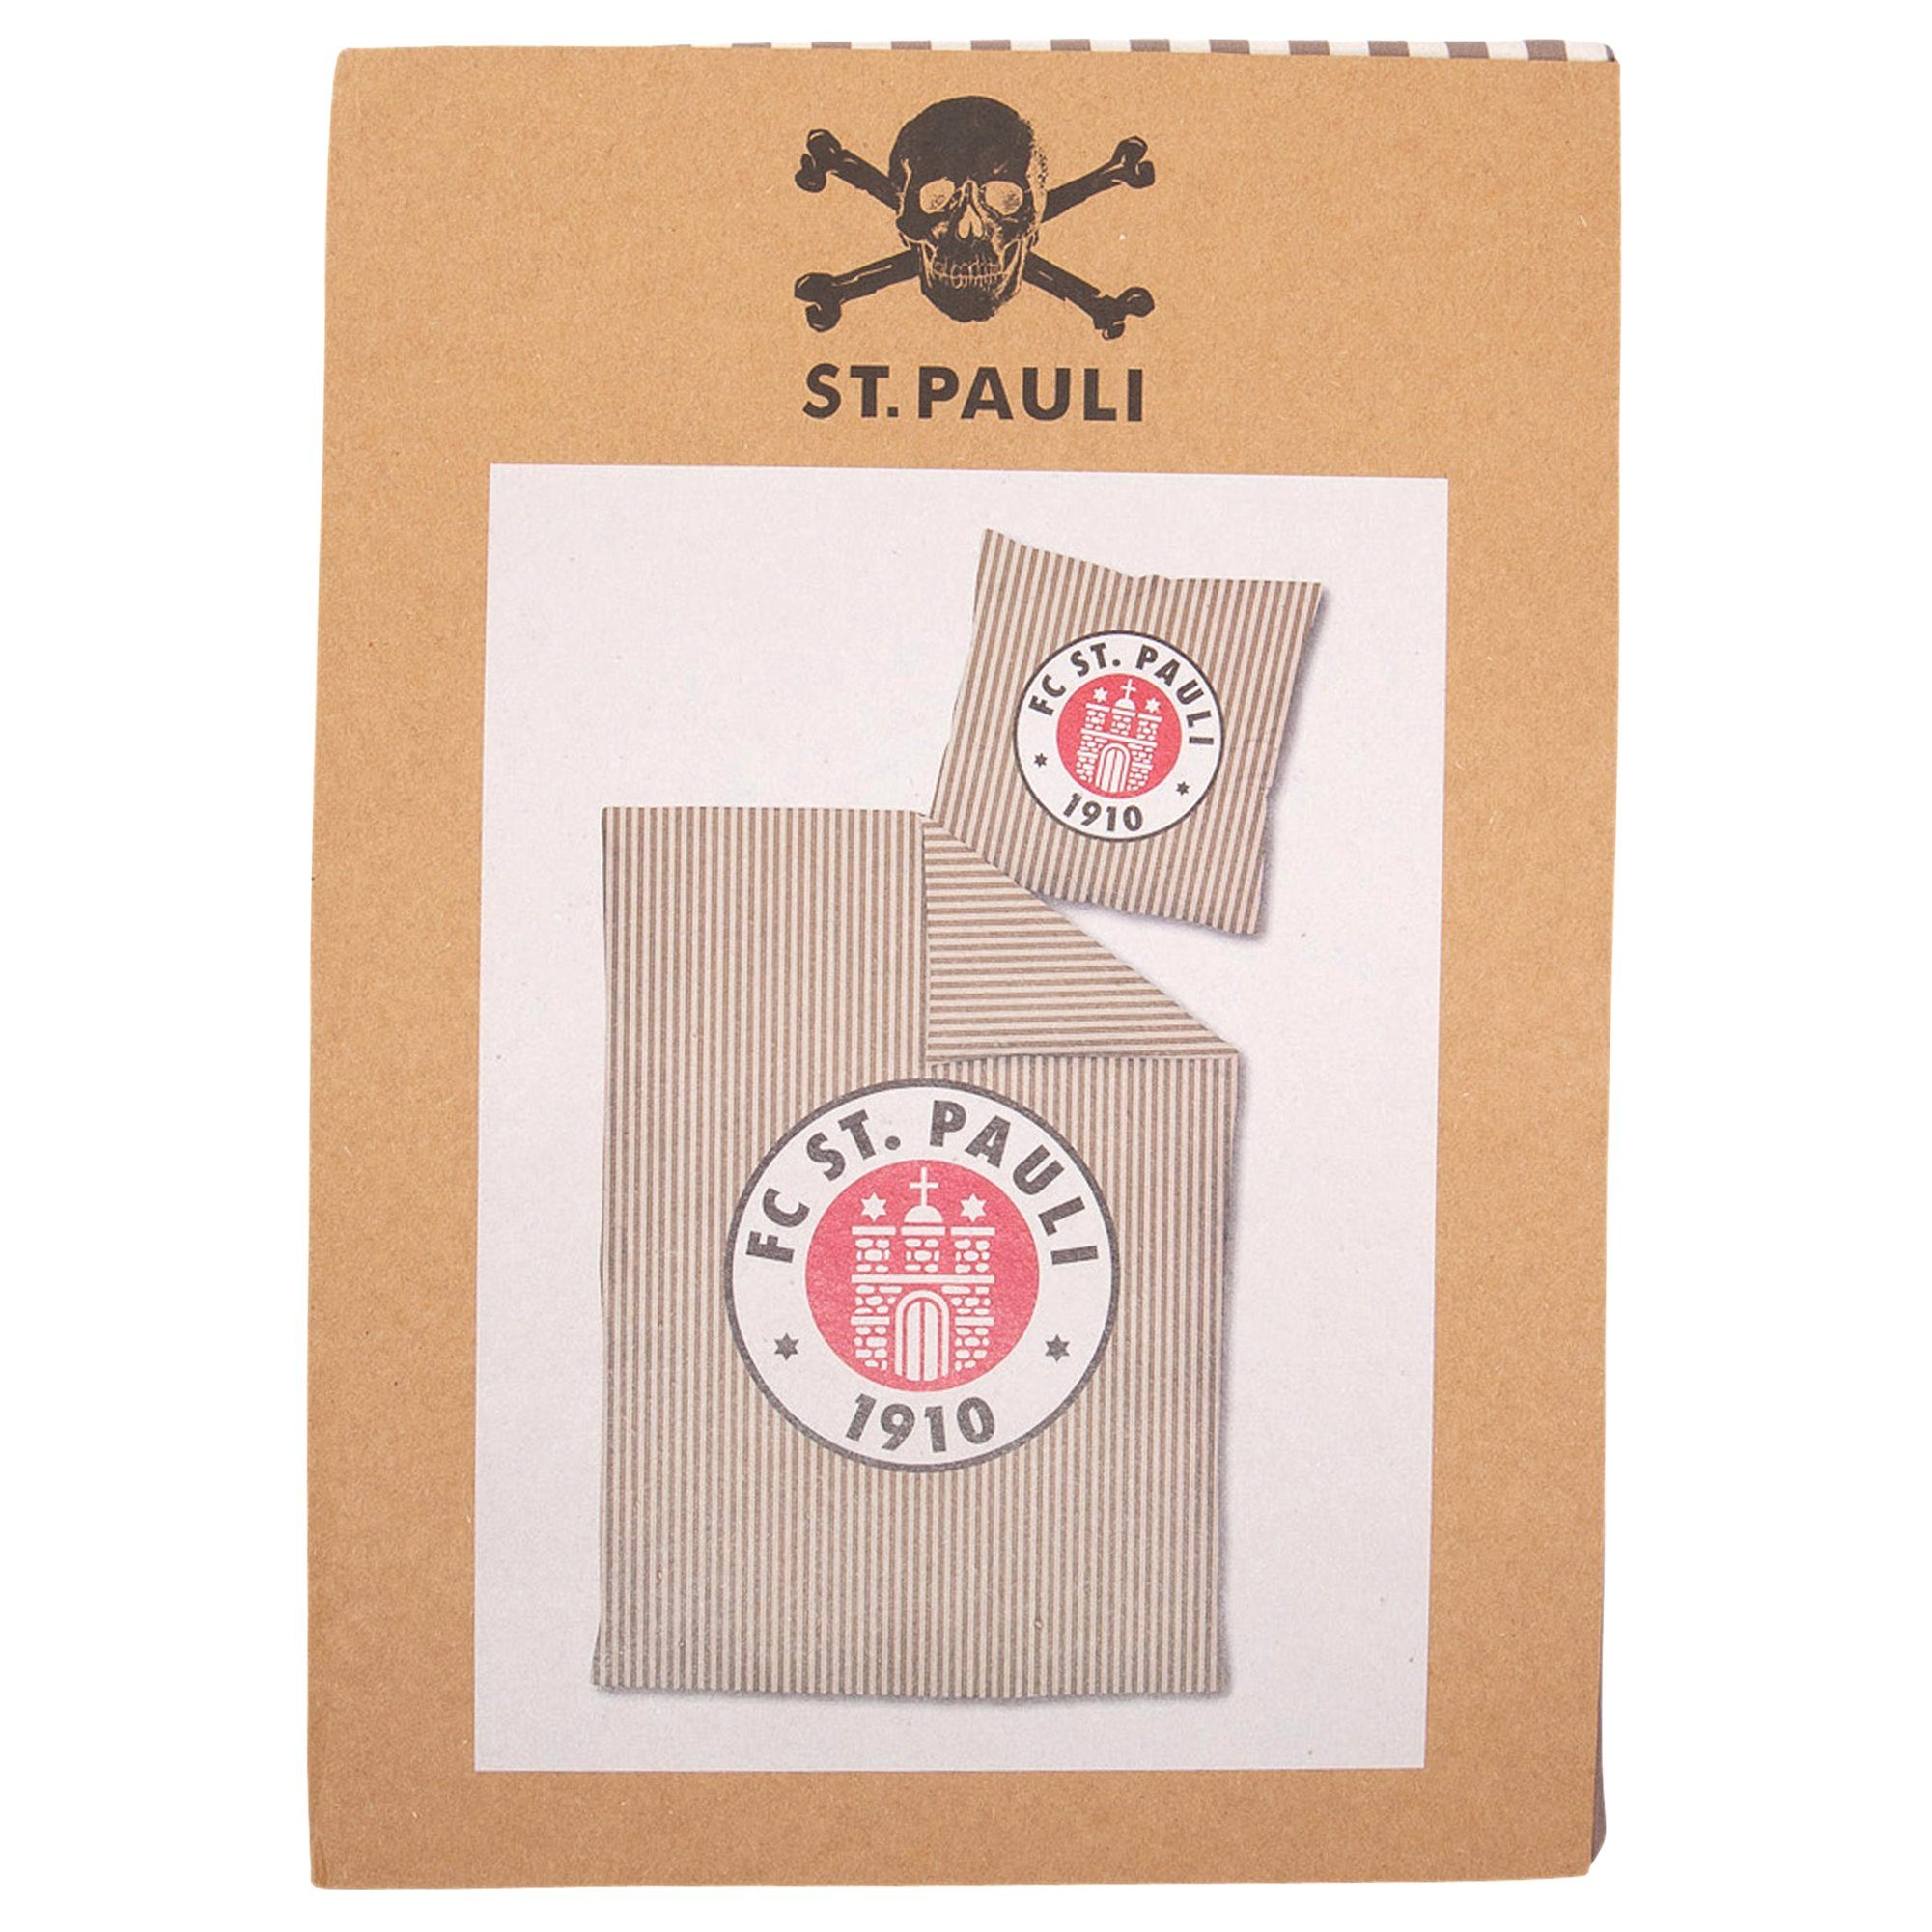 Bettwäsche Logo Streifen braun/weiß, FC St. Pauli, Bio-Baumwolle, 2 teilig, mit Reißverschluss, 100% Bio-Baumwolle